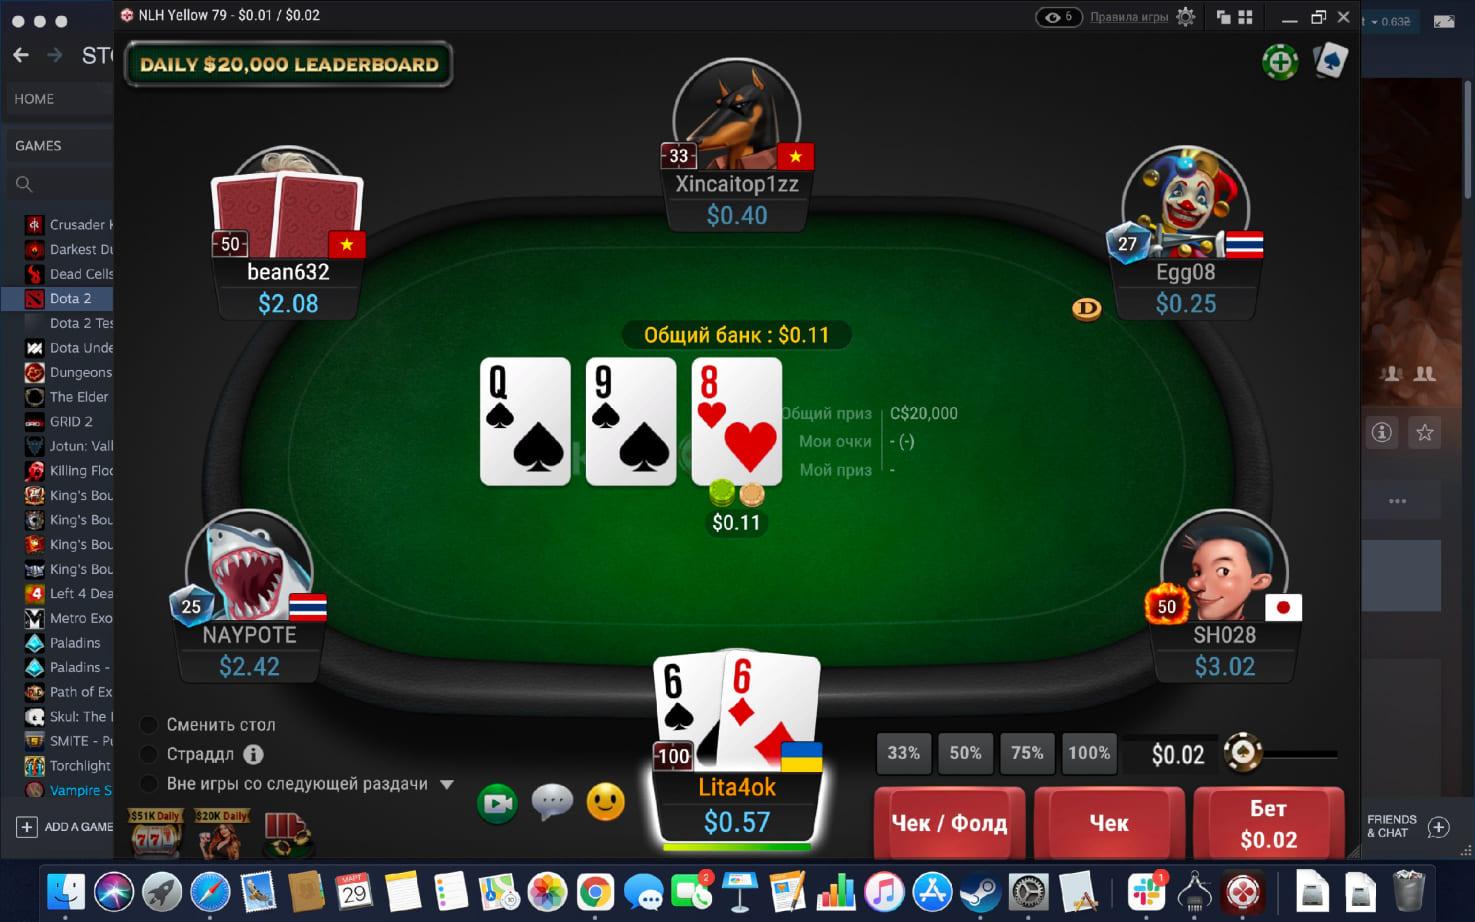 Гг покерок pokerok games4. Покерные румы покерок. Интерфейс покерок. Комната для покера.